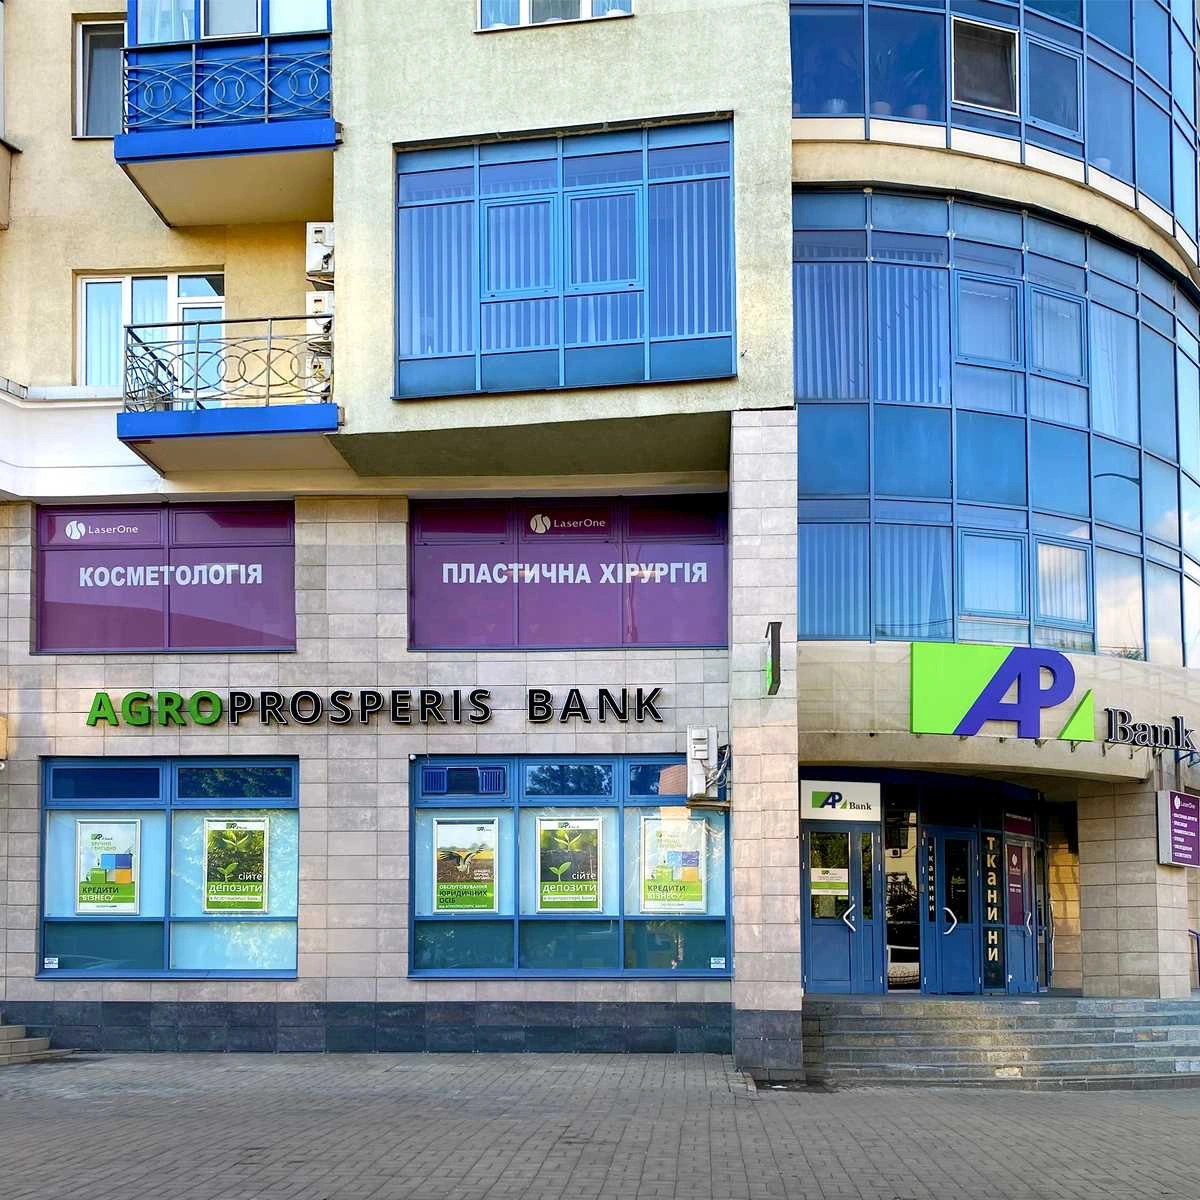 Агропросперис Банк открыл еще одно отделение в Киеве возле м. Печерская